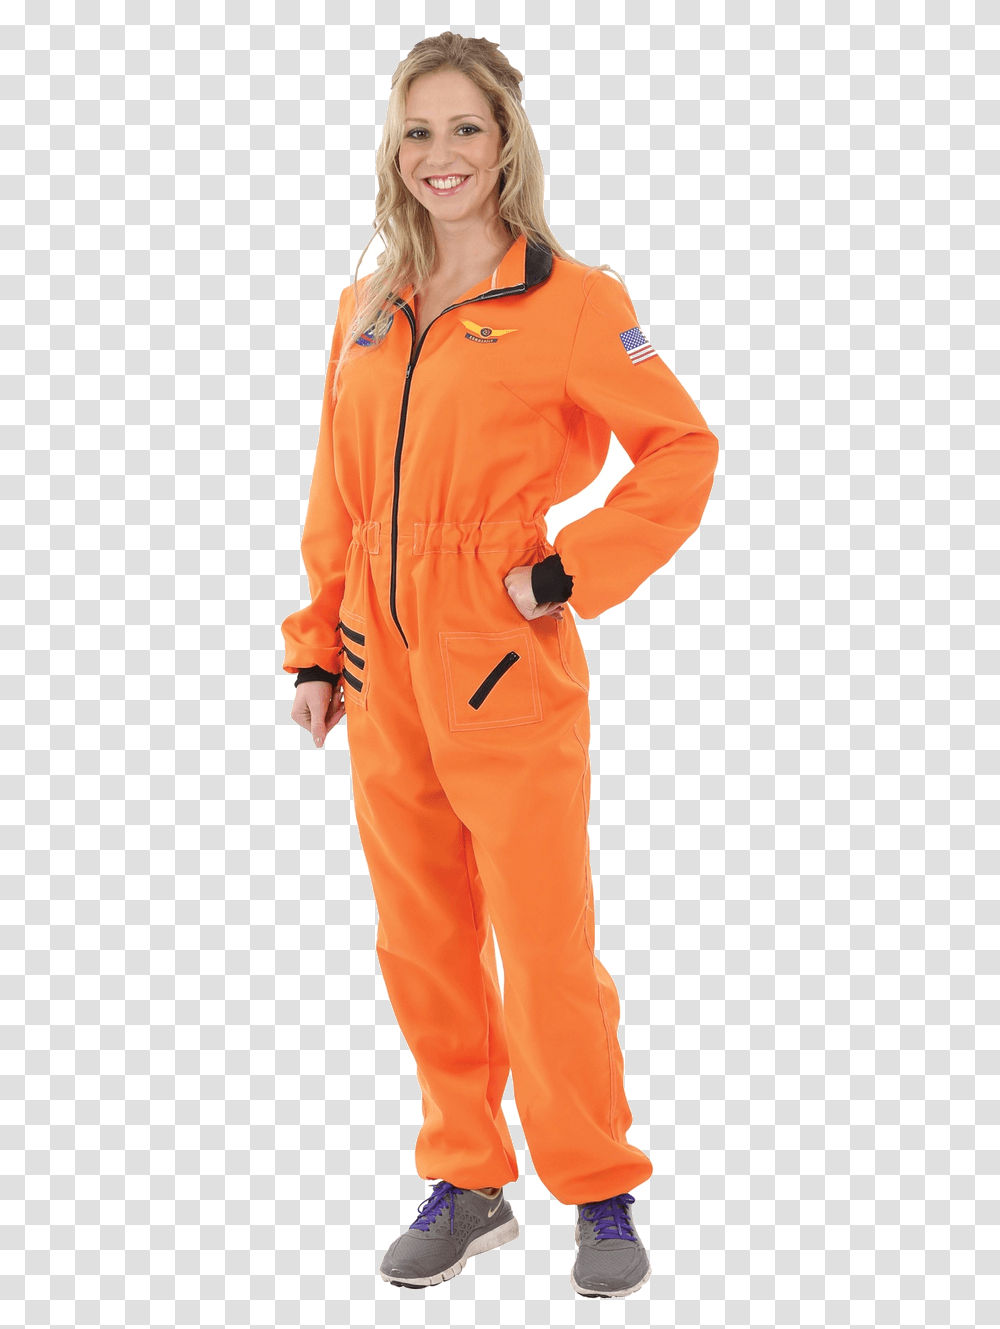 Female Orange Astronaut Costume, Apparel, Coat, Person Transparent Png